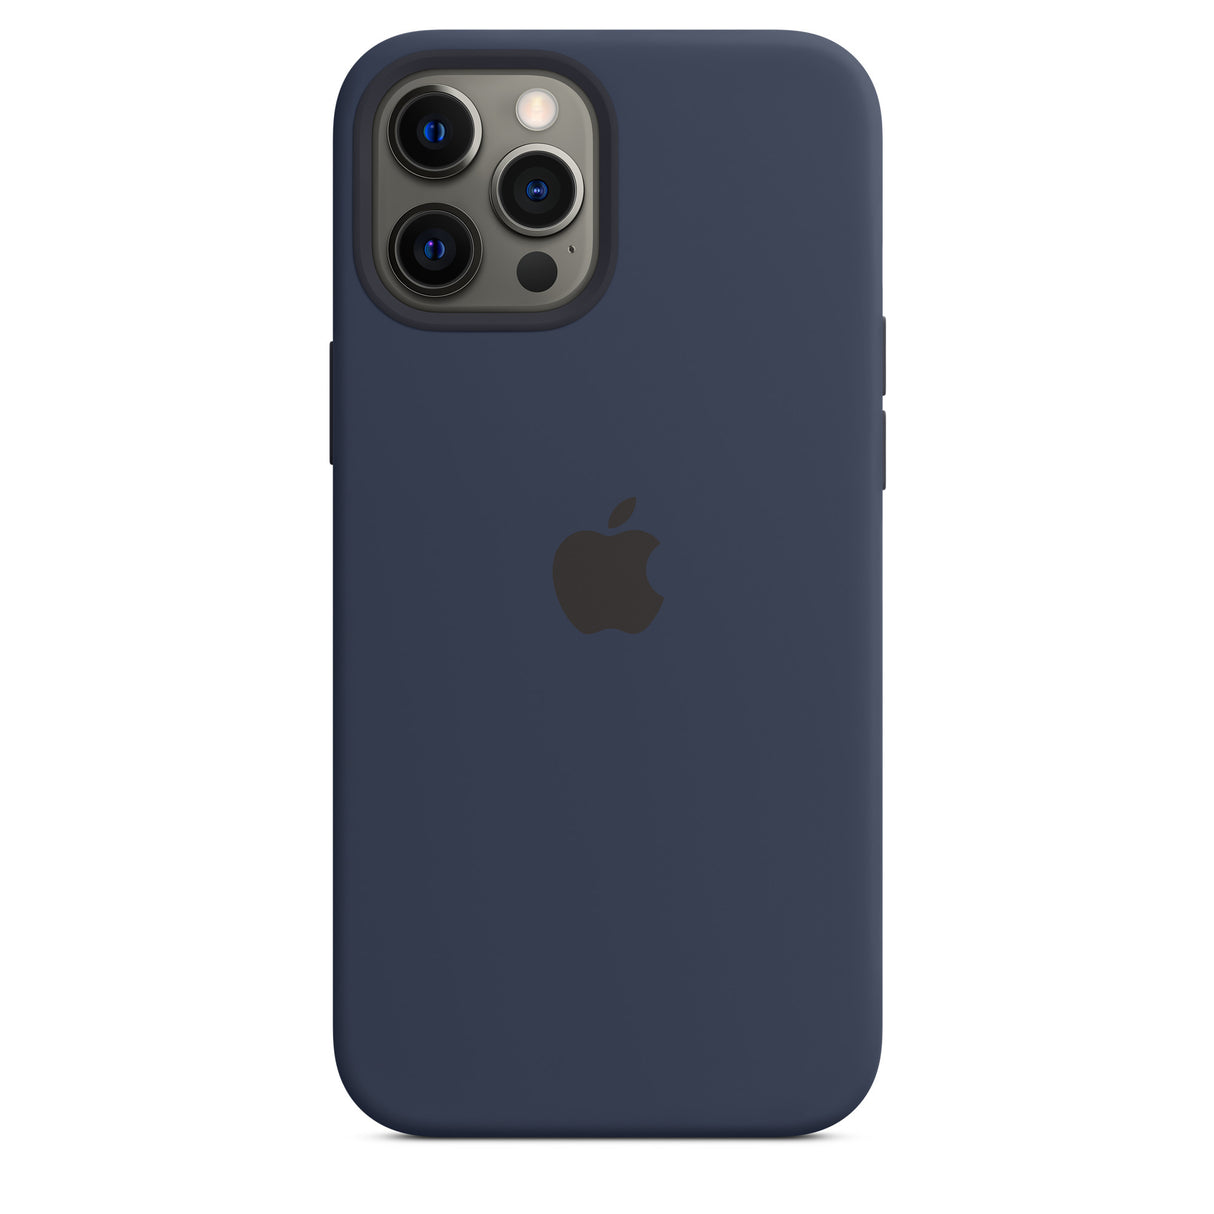 غطاء حماية من السيليكون لهاتف iPhone 12 Pro Max مع MagSafe - أزرق داكن OB 